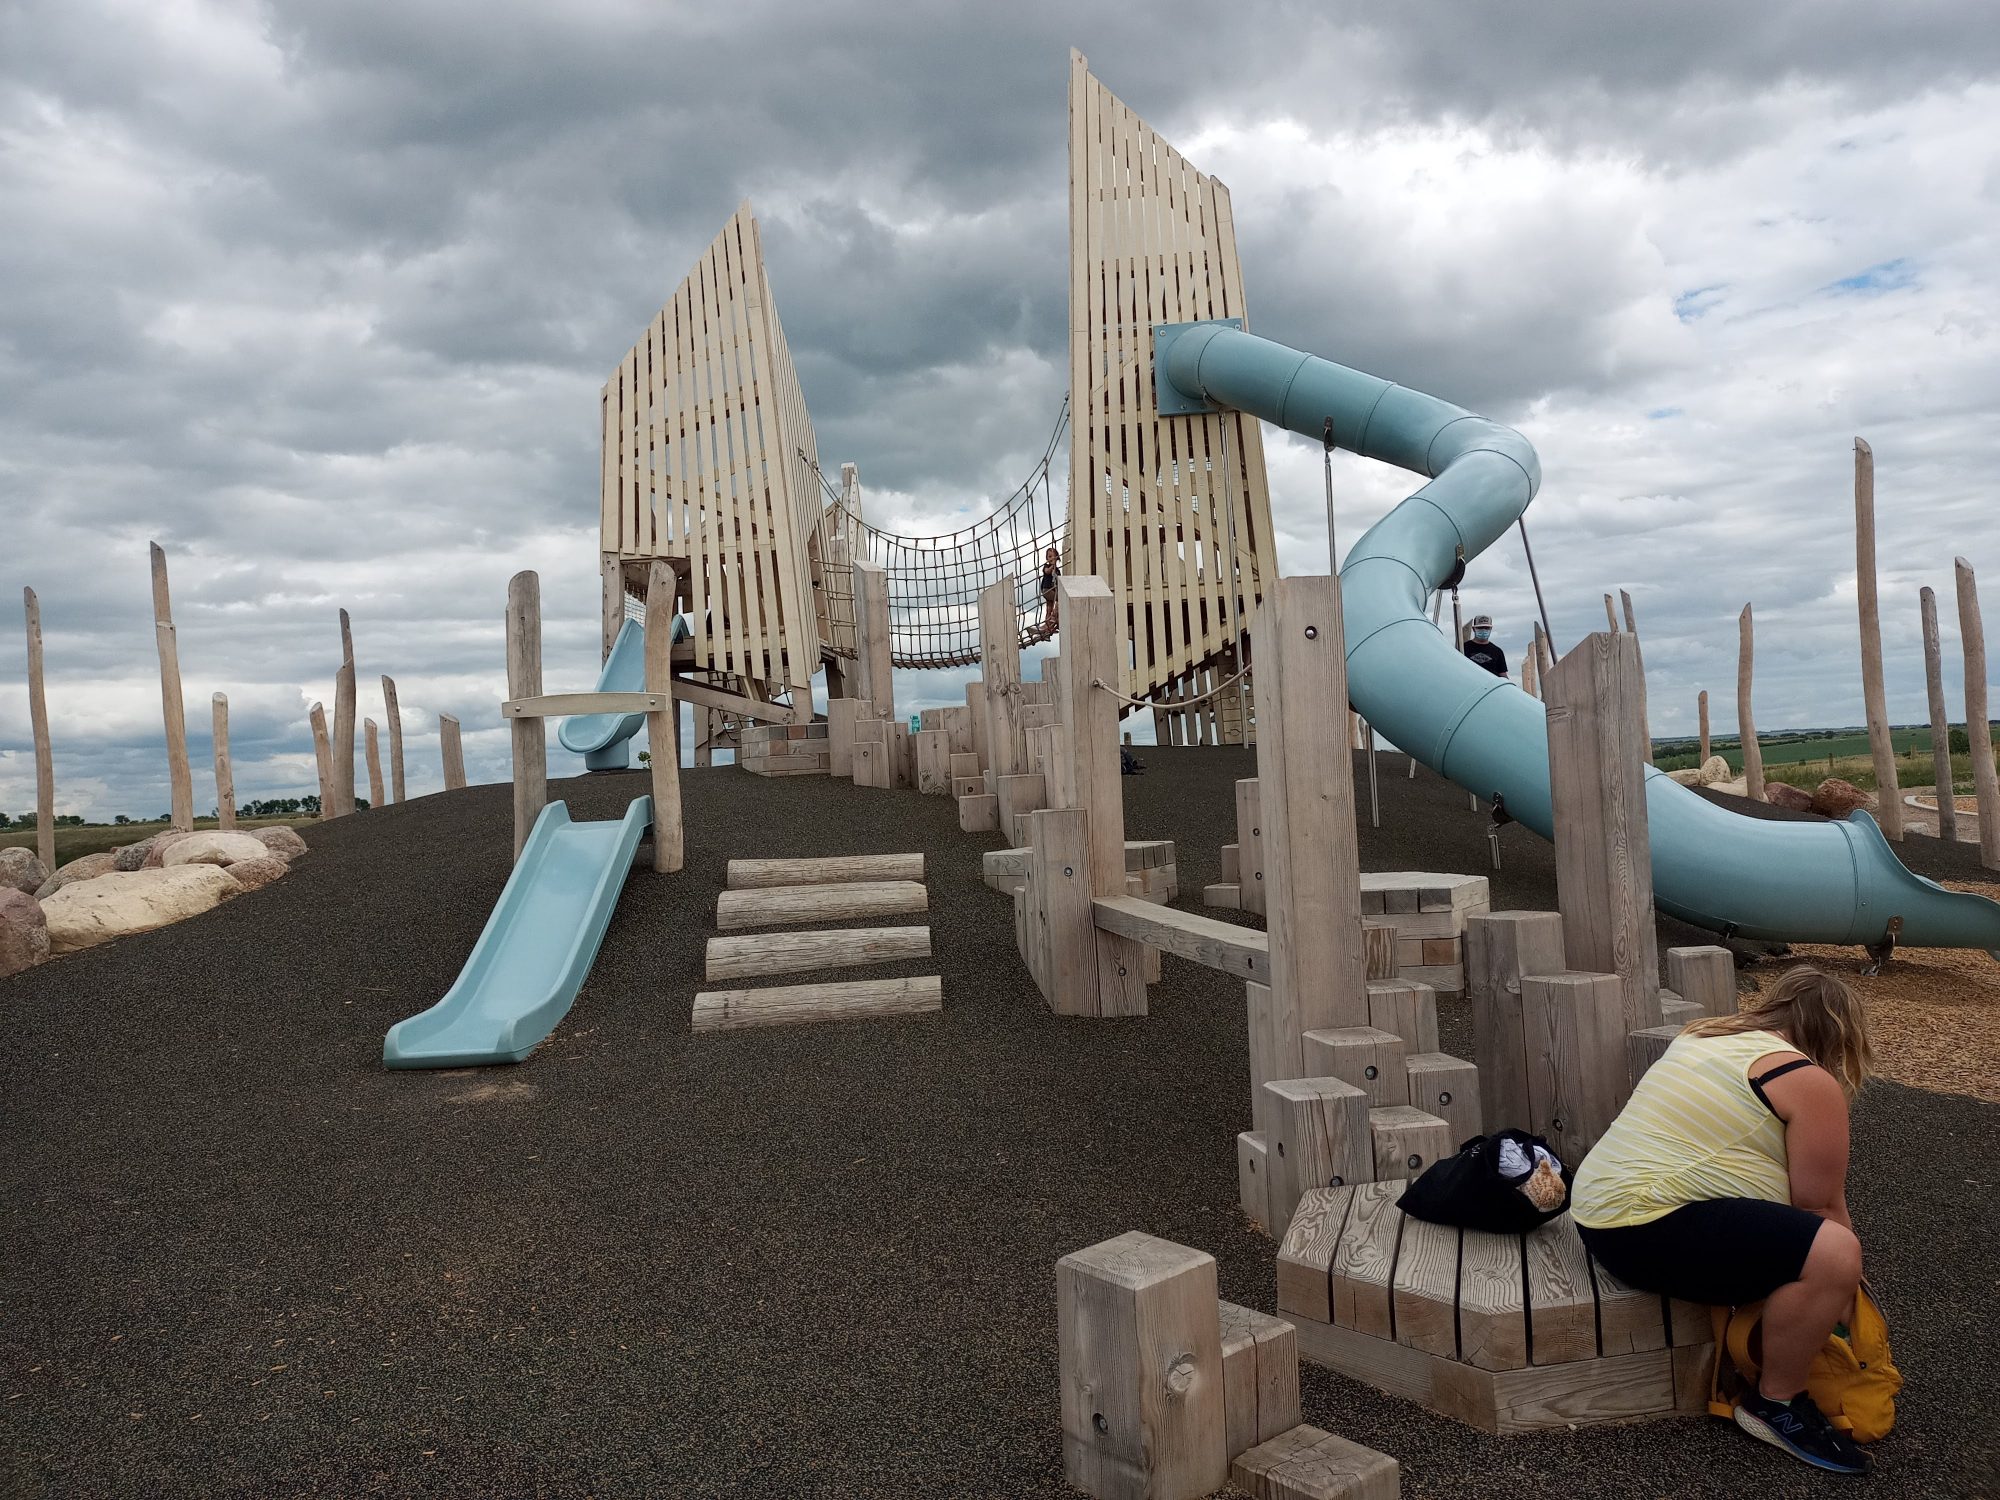 Parques infantiles de Saskatoon